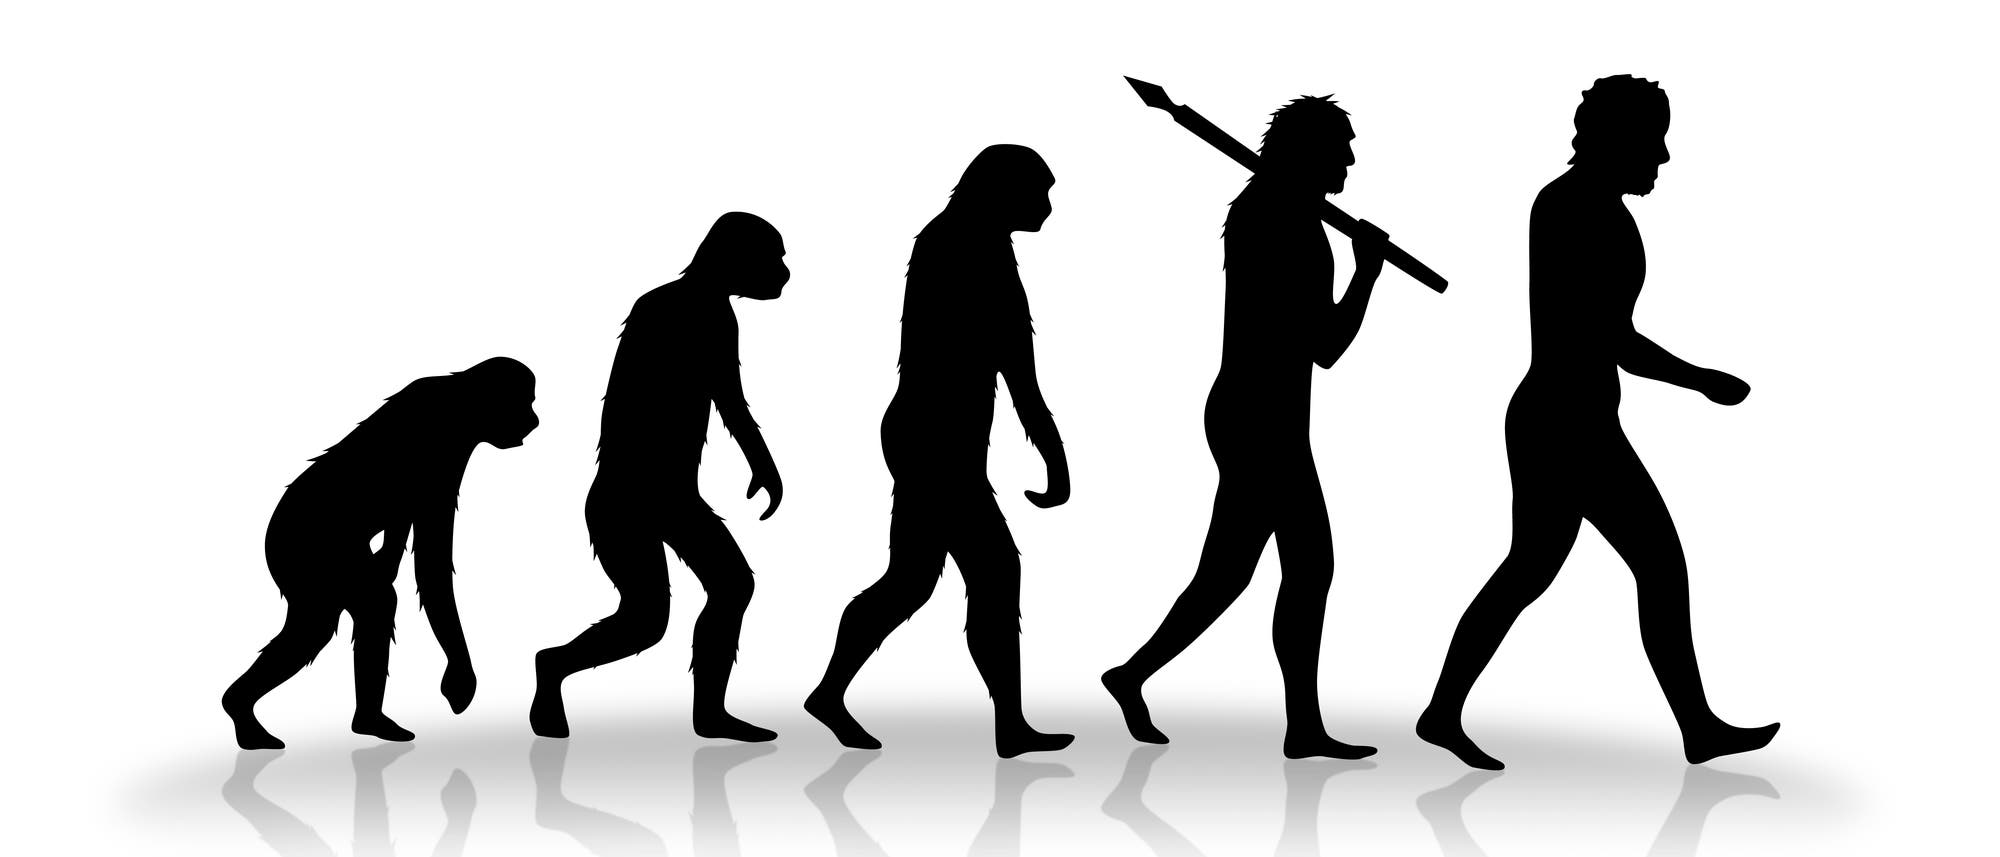 Stufen der Evolution des Menschen